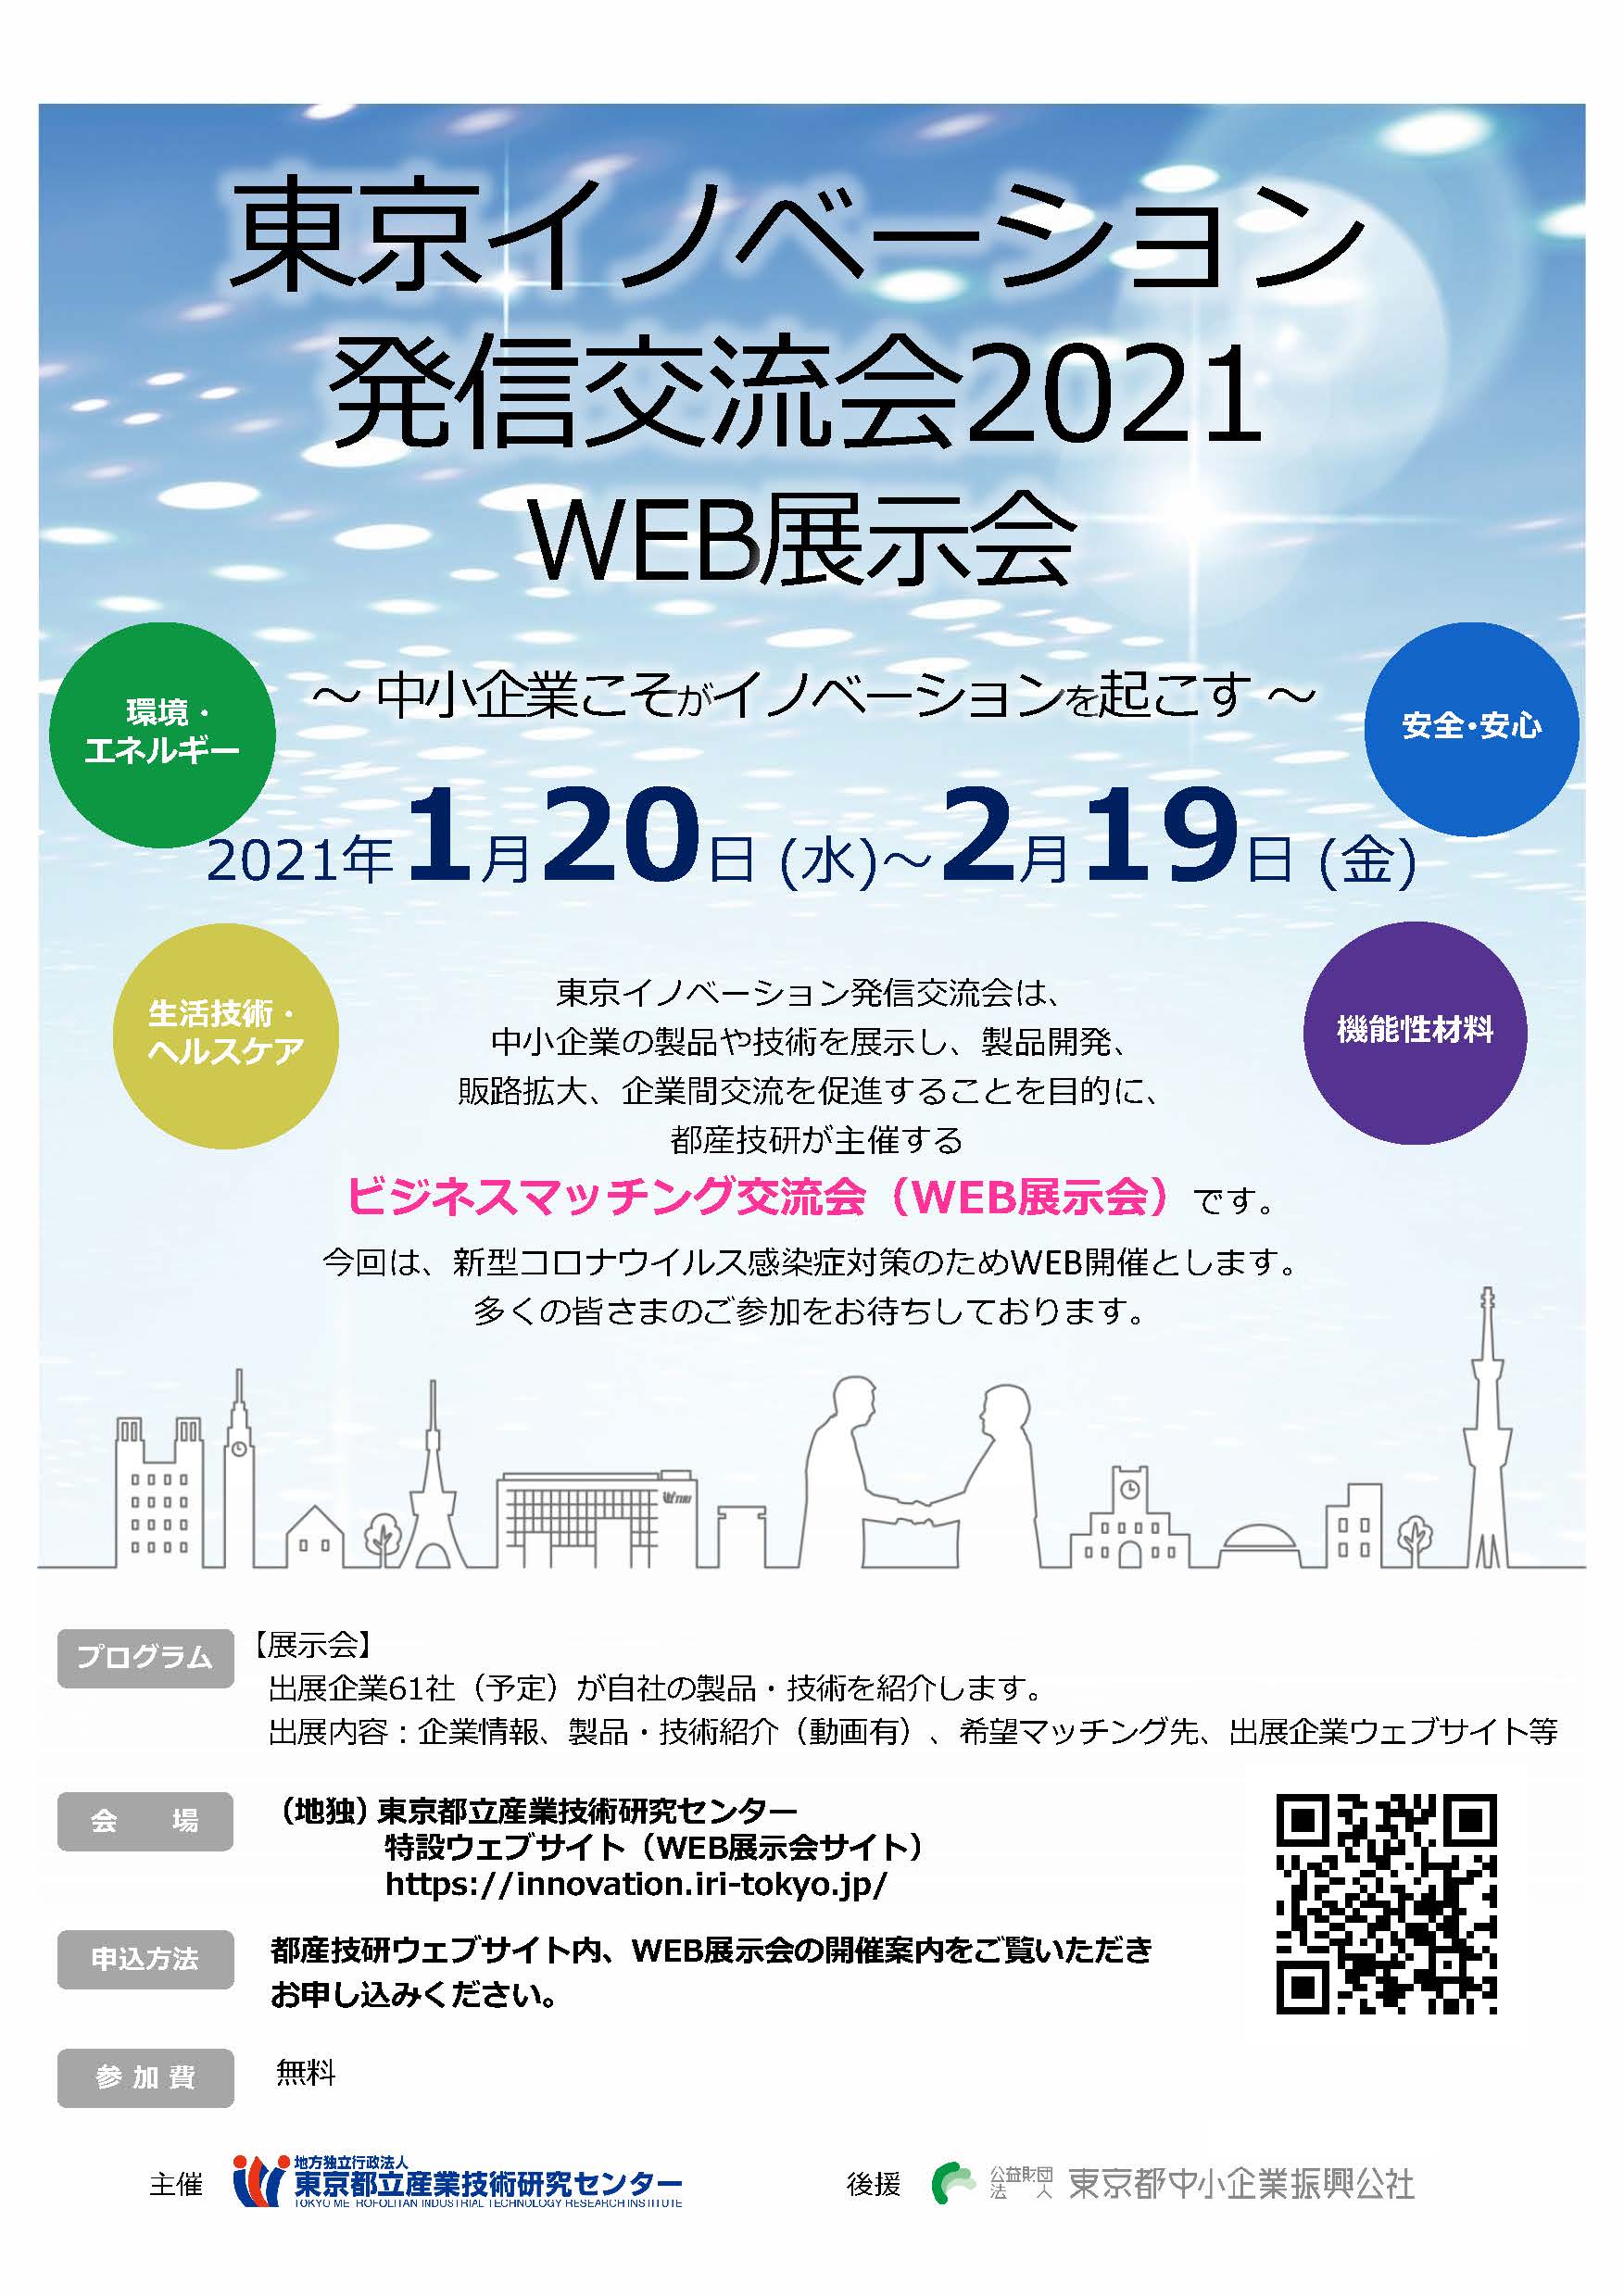 東京イノベーション発信交流会2021 WEB展示会